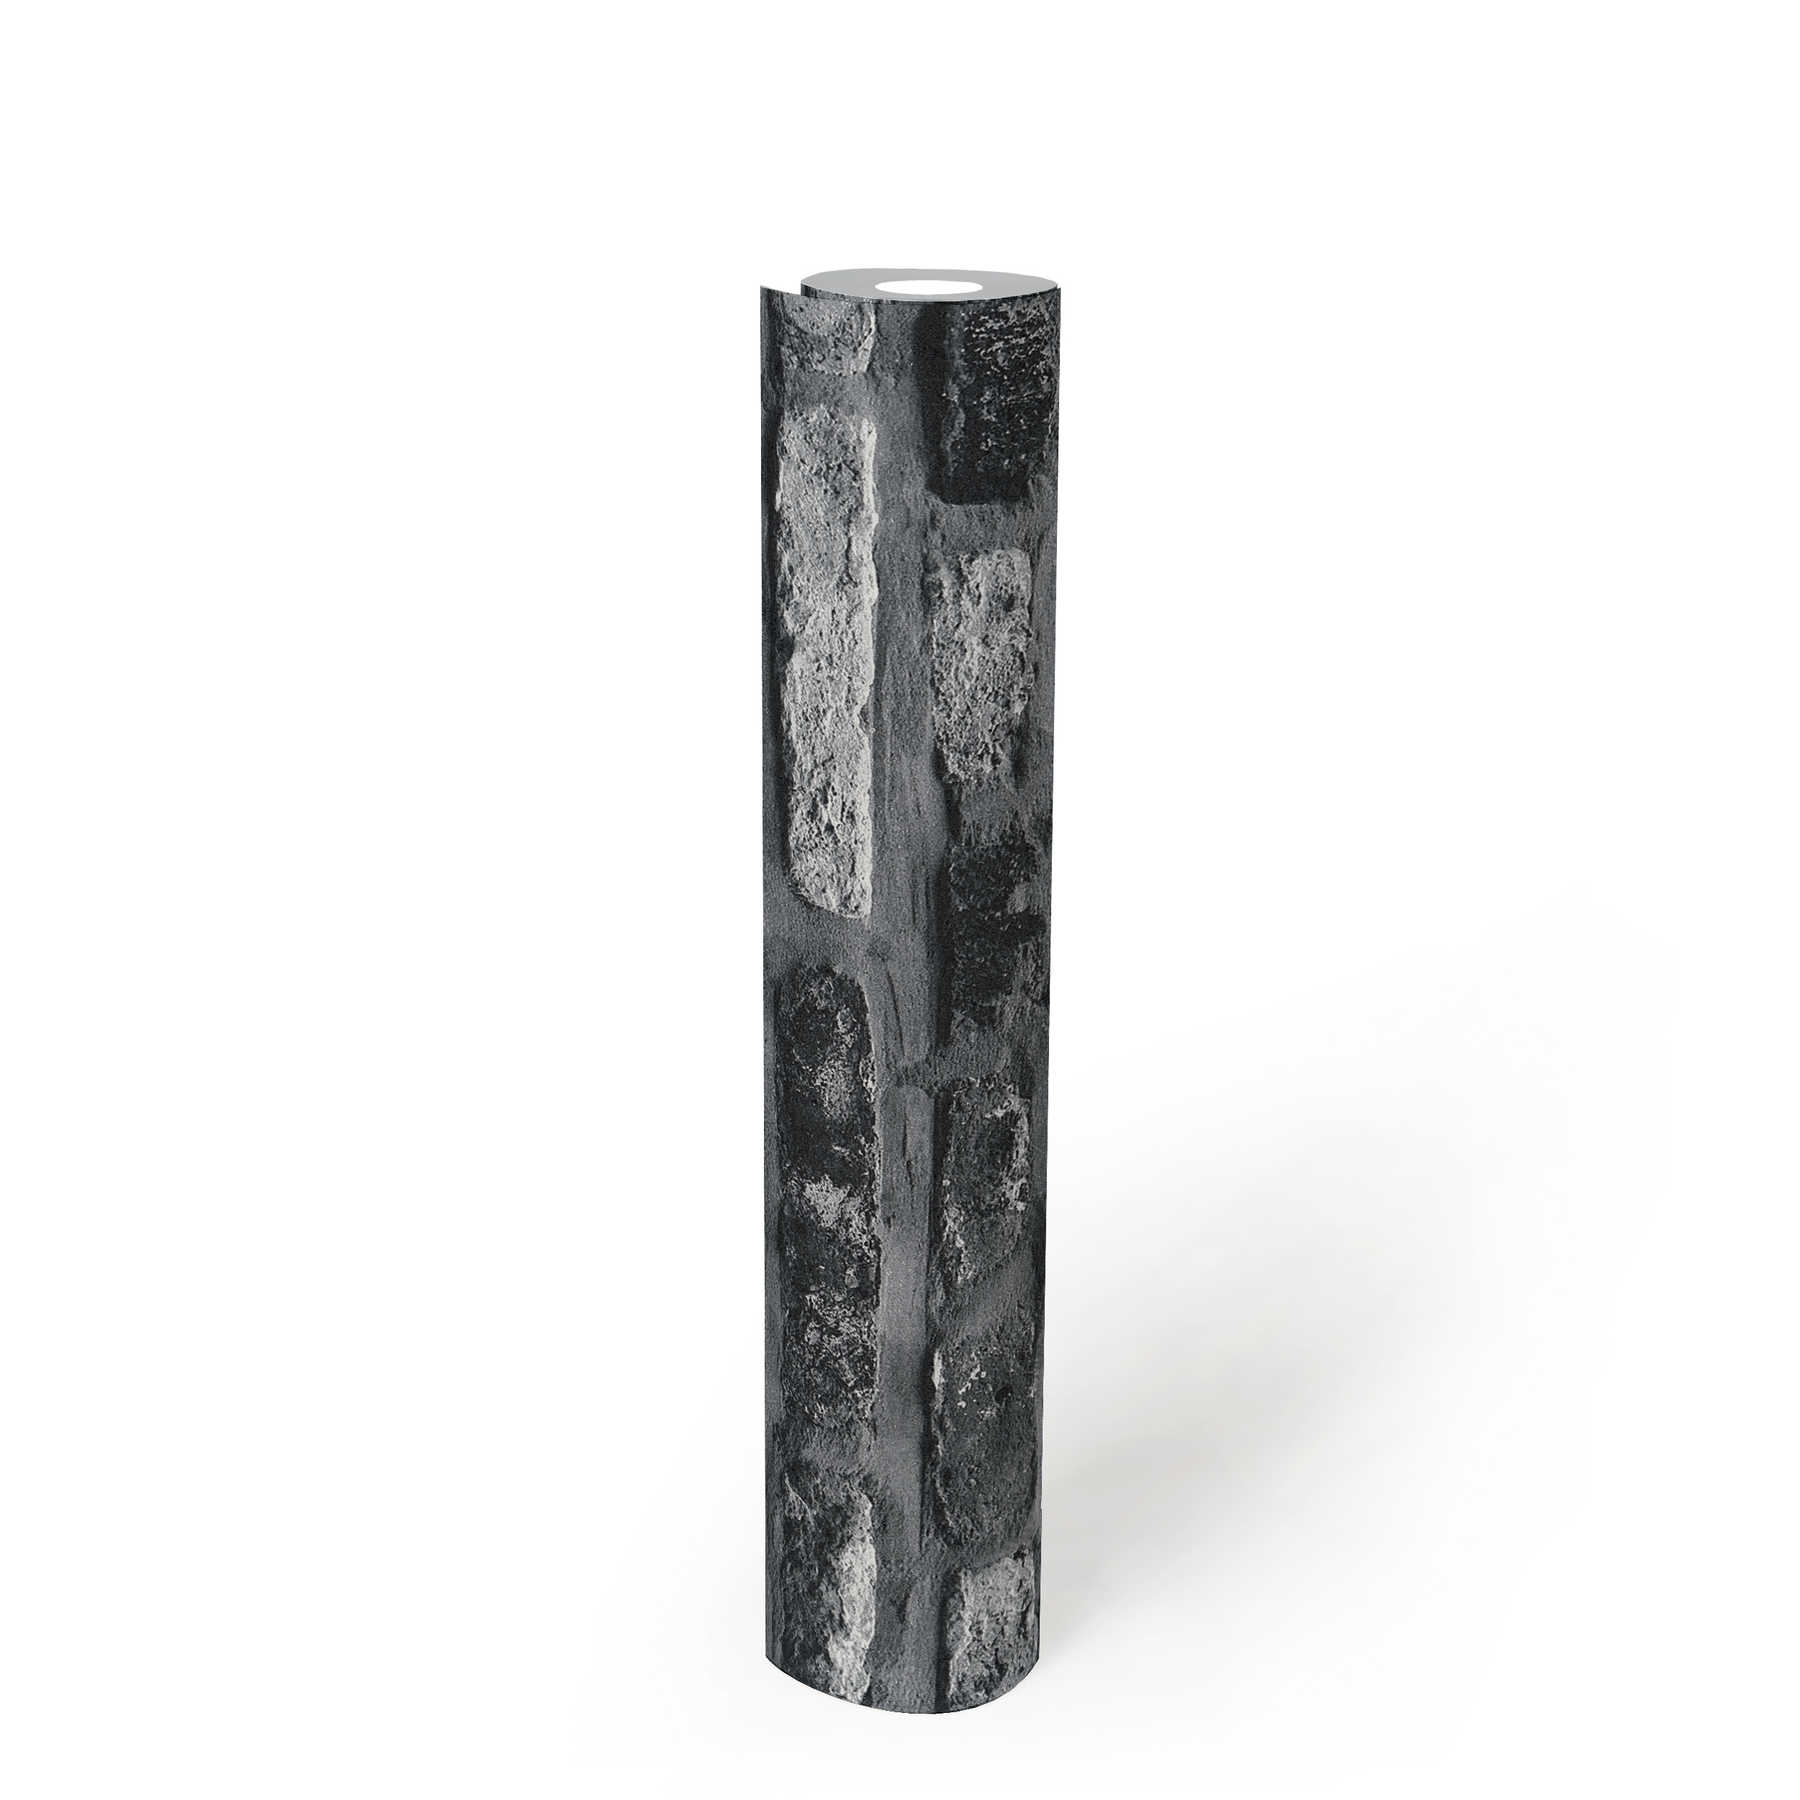             Vliestapete mit Steinoptik, dunkles Backsteinmauerwerk – Grau, Schwarz
        